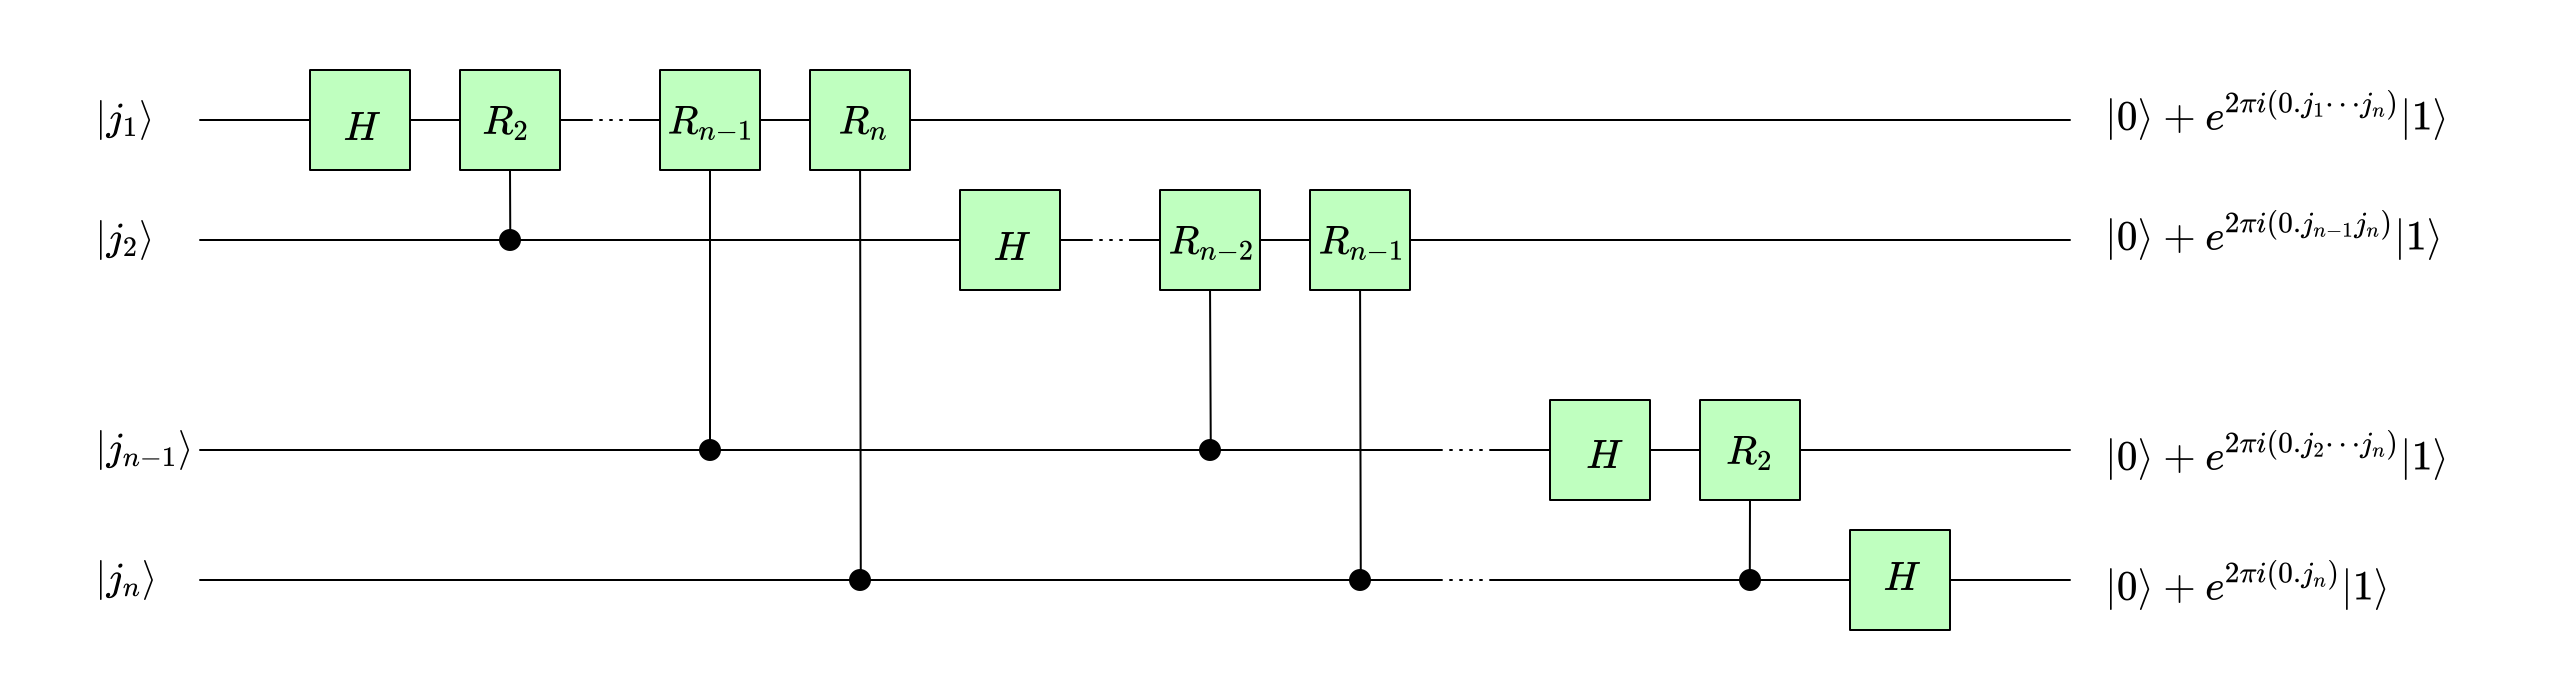 a diagram depicting a quantum circuit